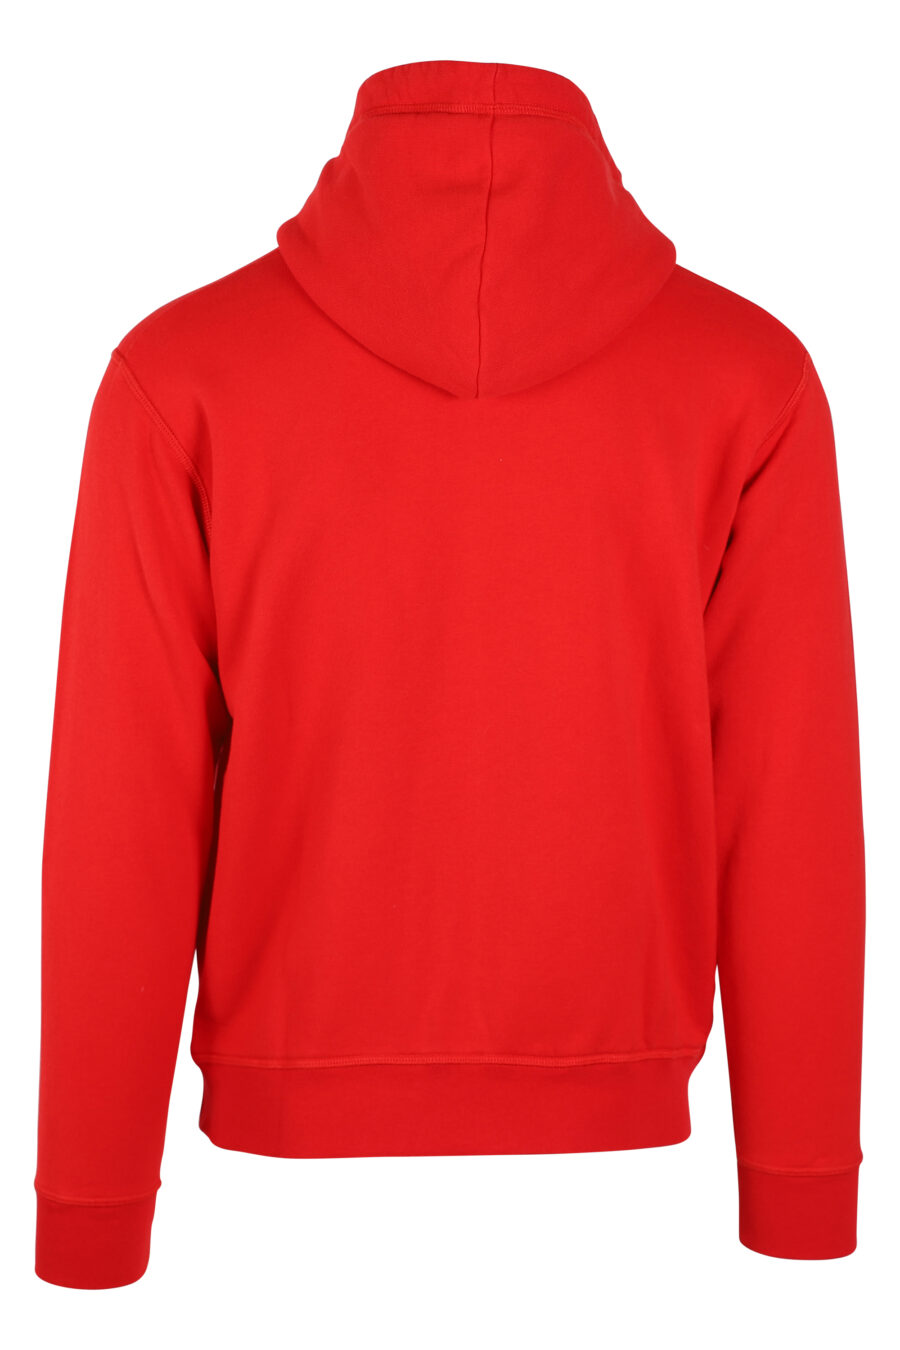 Dsquared2 - Sudadera roja con capucha y cremallera doble logo